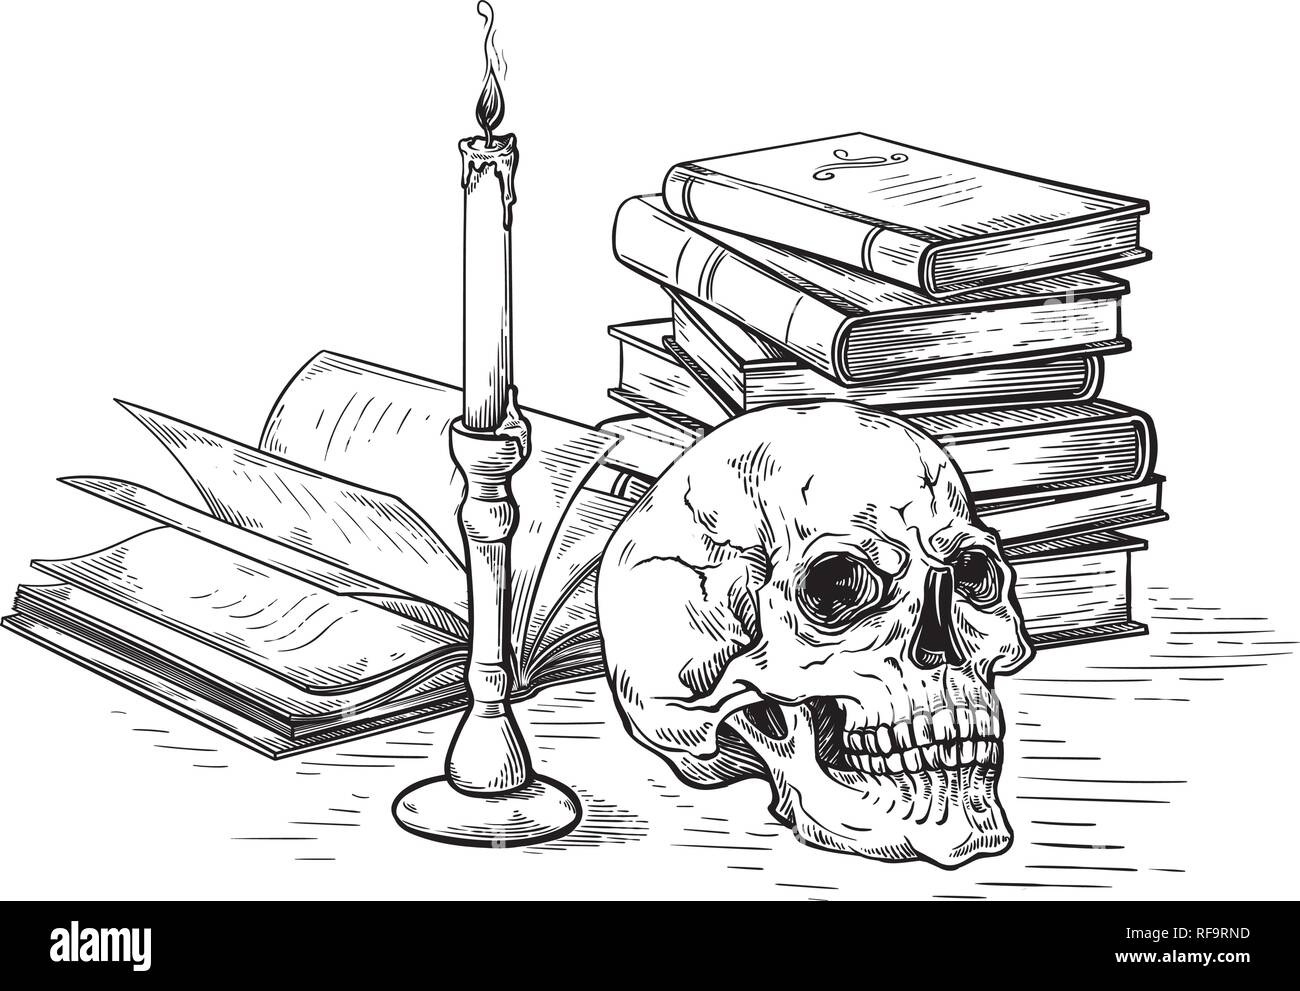 Handgefertigte Skizze Tod Konzept menschlicher Schädel auf alte Bücher in der Nähe der Kerze auf dunklem Hintergrund Vector Illustration Stock Vektor